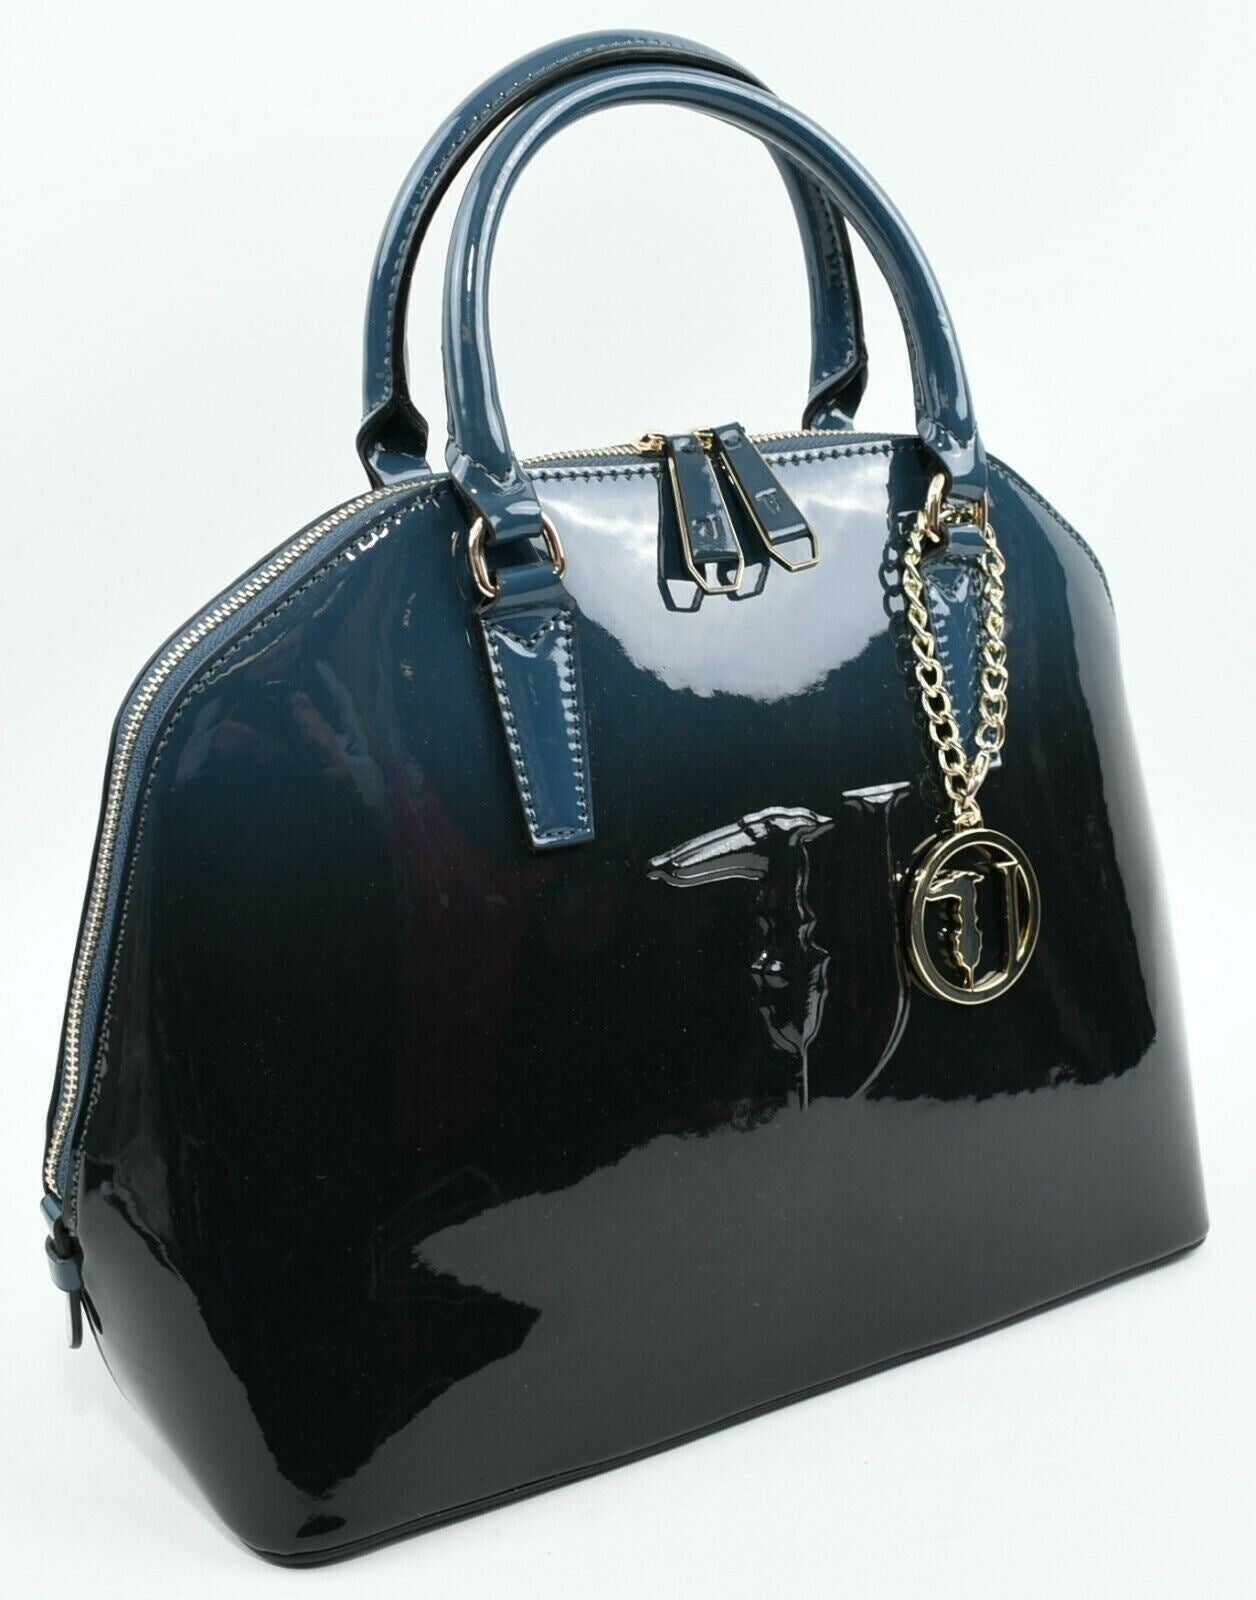 TRUSSARDI JEANS - Ombre Petrol Blue Designer Handbag, Top Handle/Shoulder